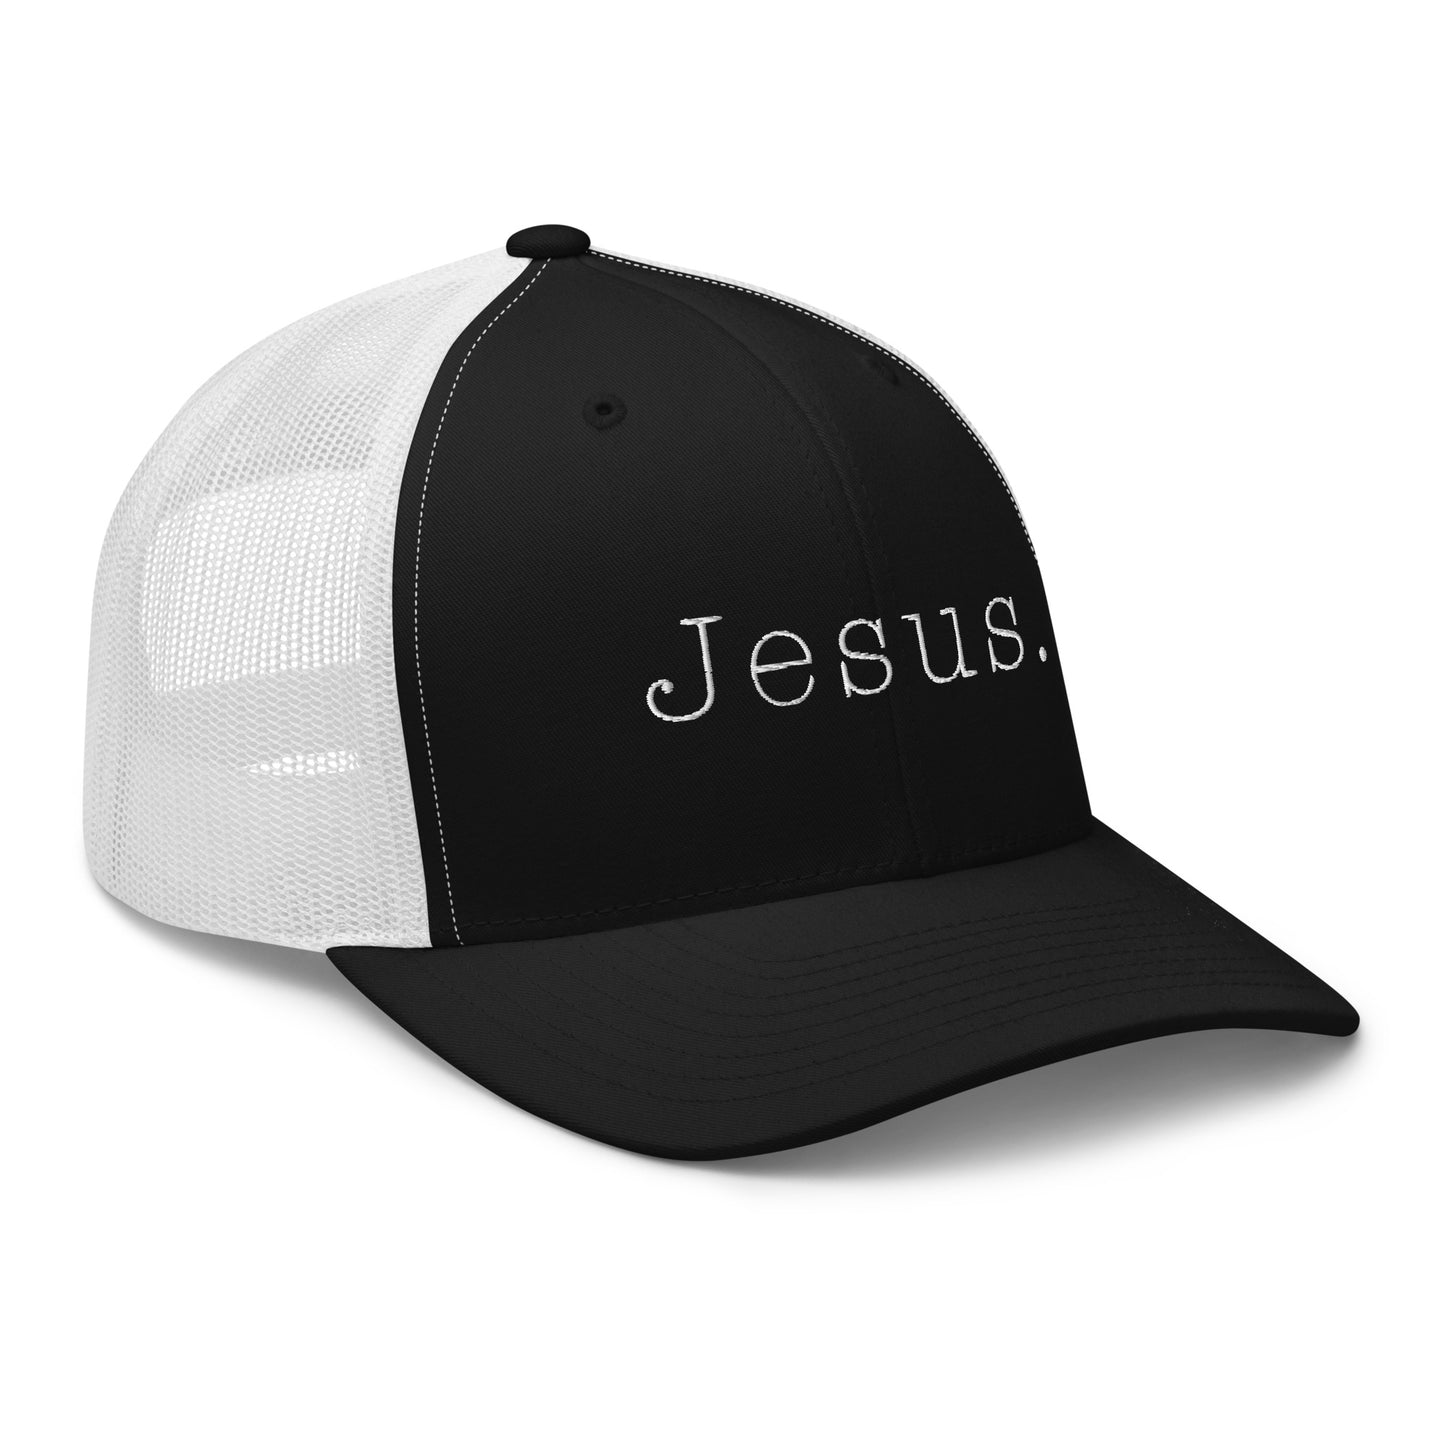 Jesus. Trucker Cap | Yupoong